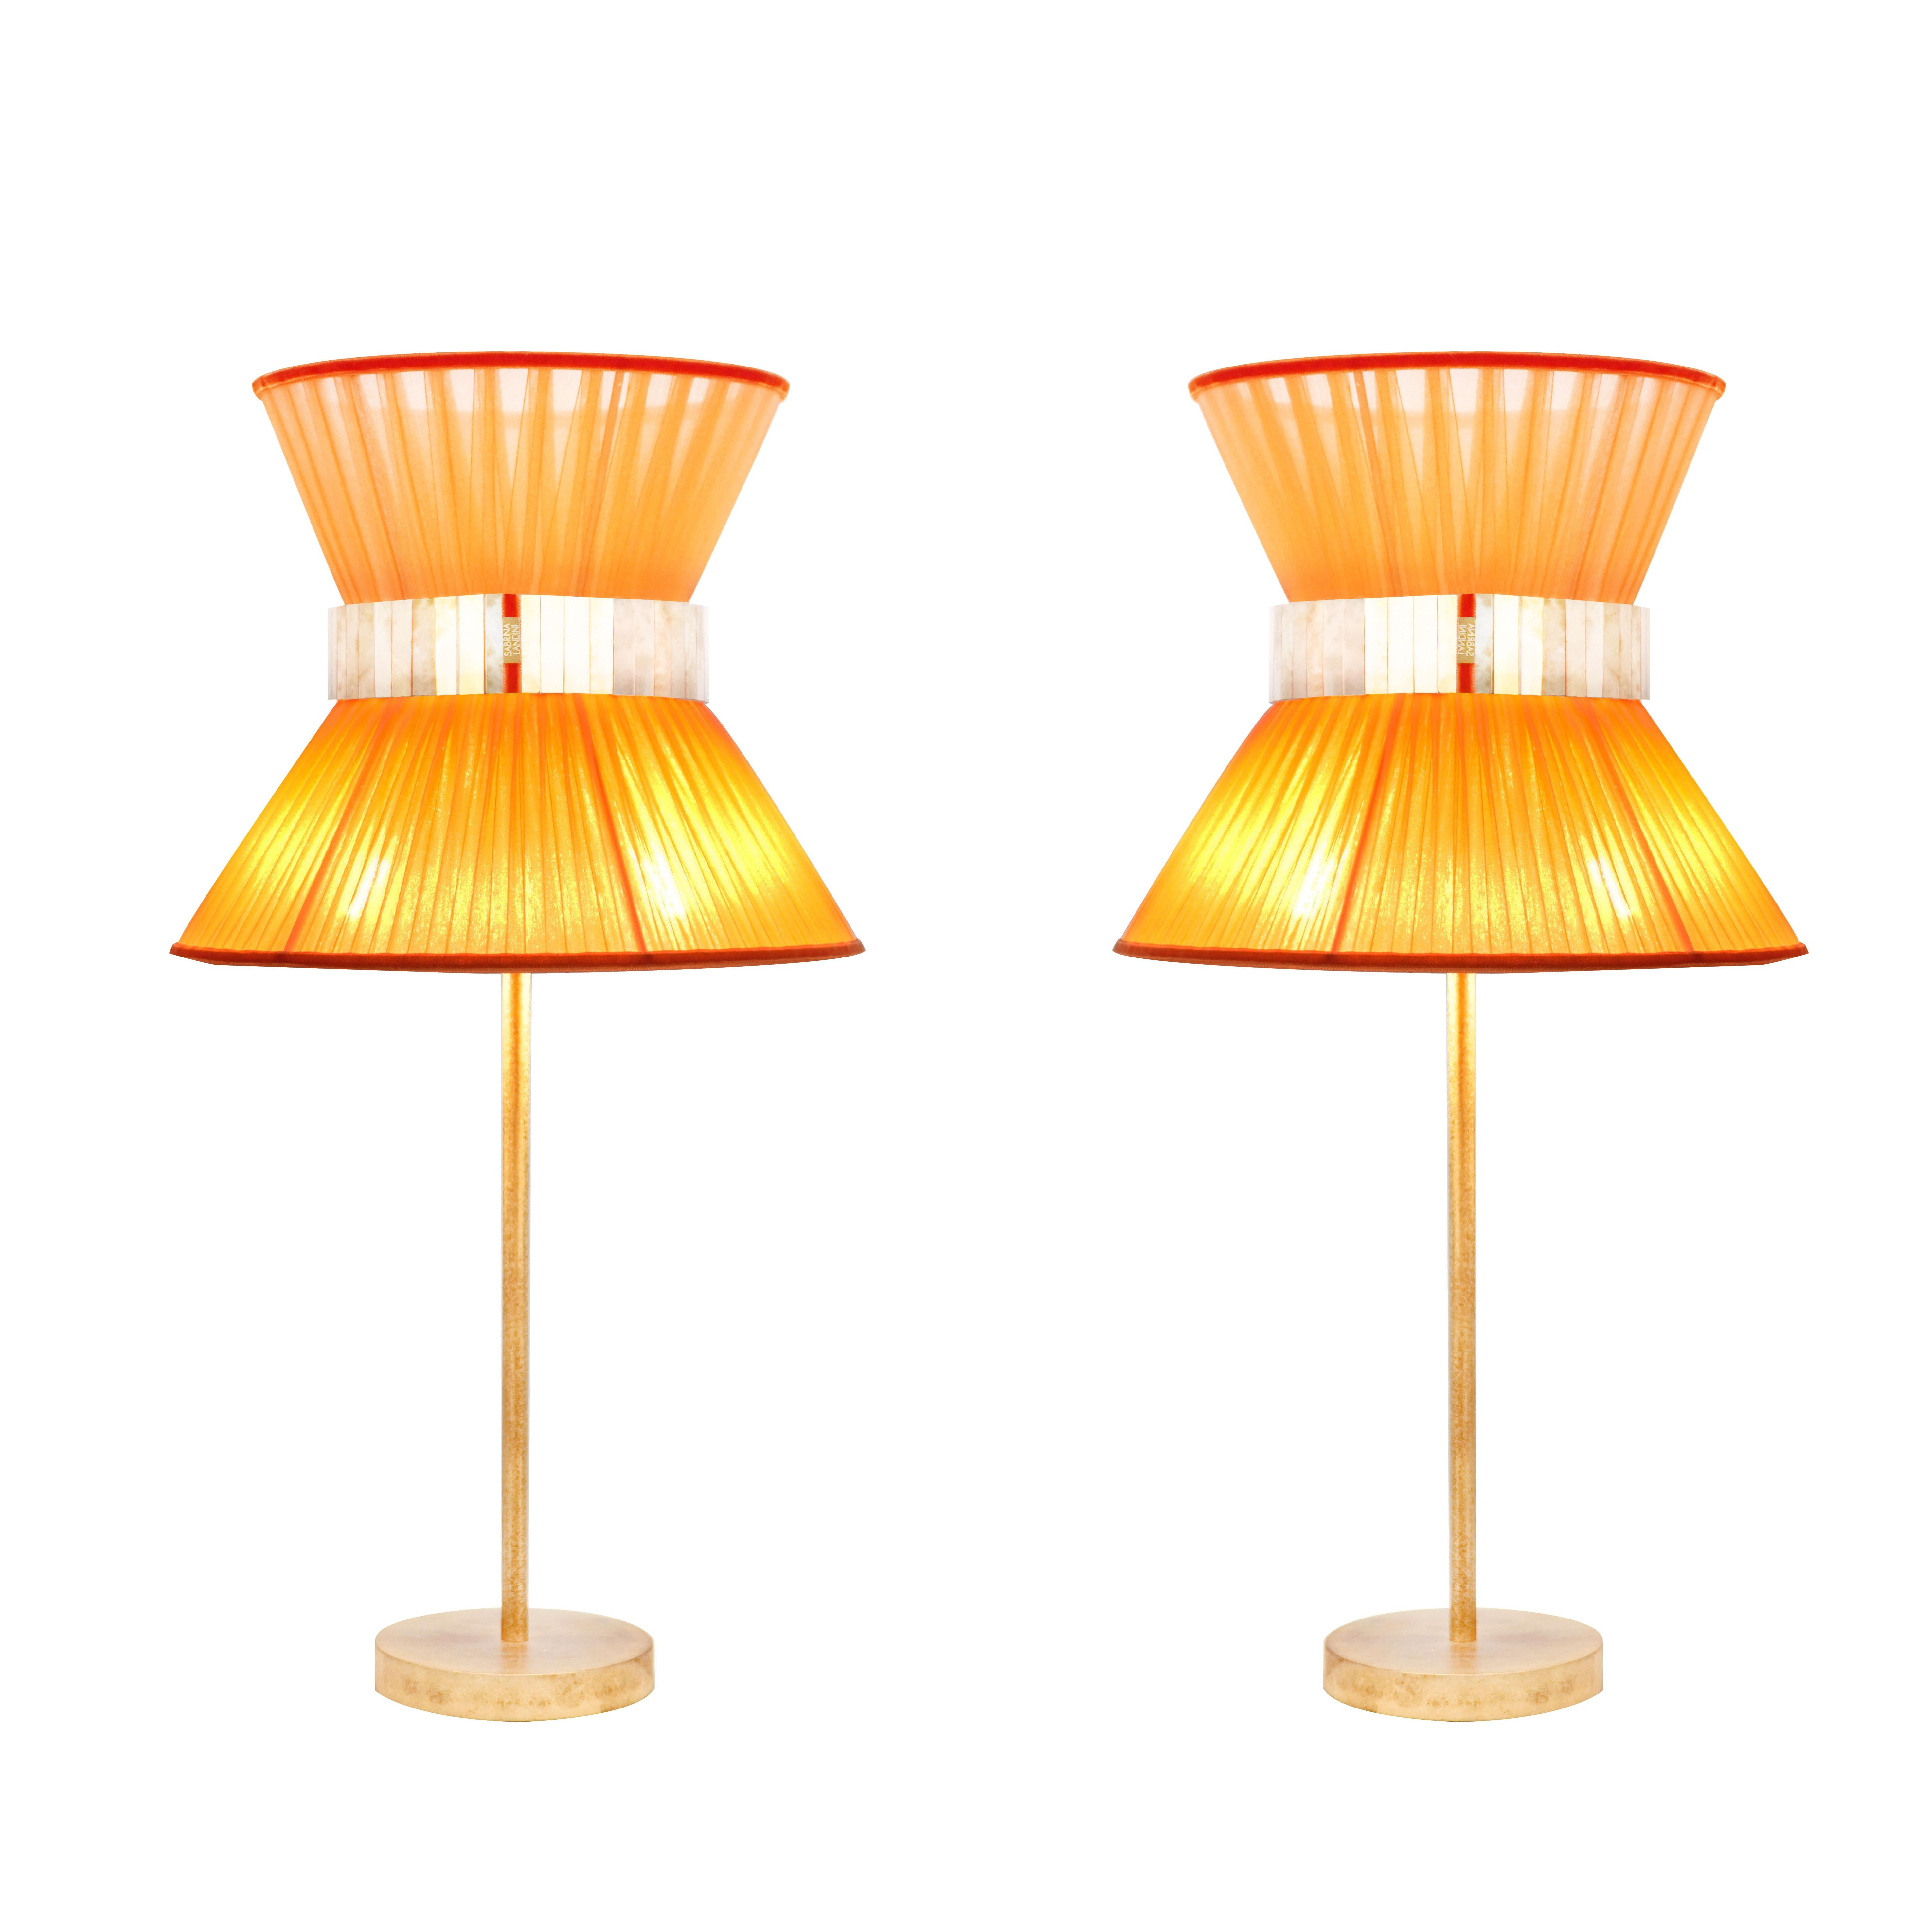 TIFFANY die kultige Lampe! 

Seit 20 Jahren sind wir bestrebt, Ihnen einzigartige Collection'S in Bezug auf Design und Qualität anzubieten. Alle unsere kultigen Produkte werden in unserem Atelier in der Toskana, Italien, nach einem uralten